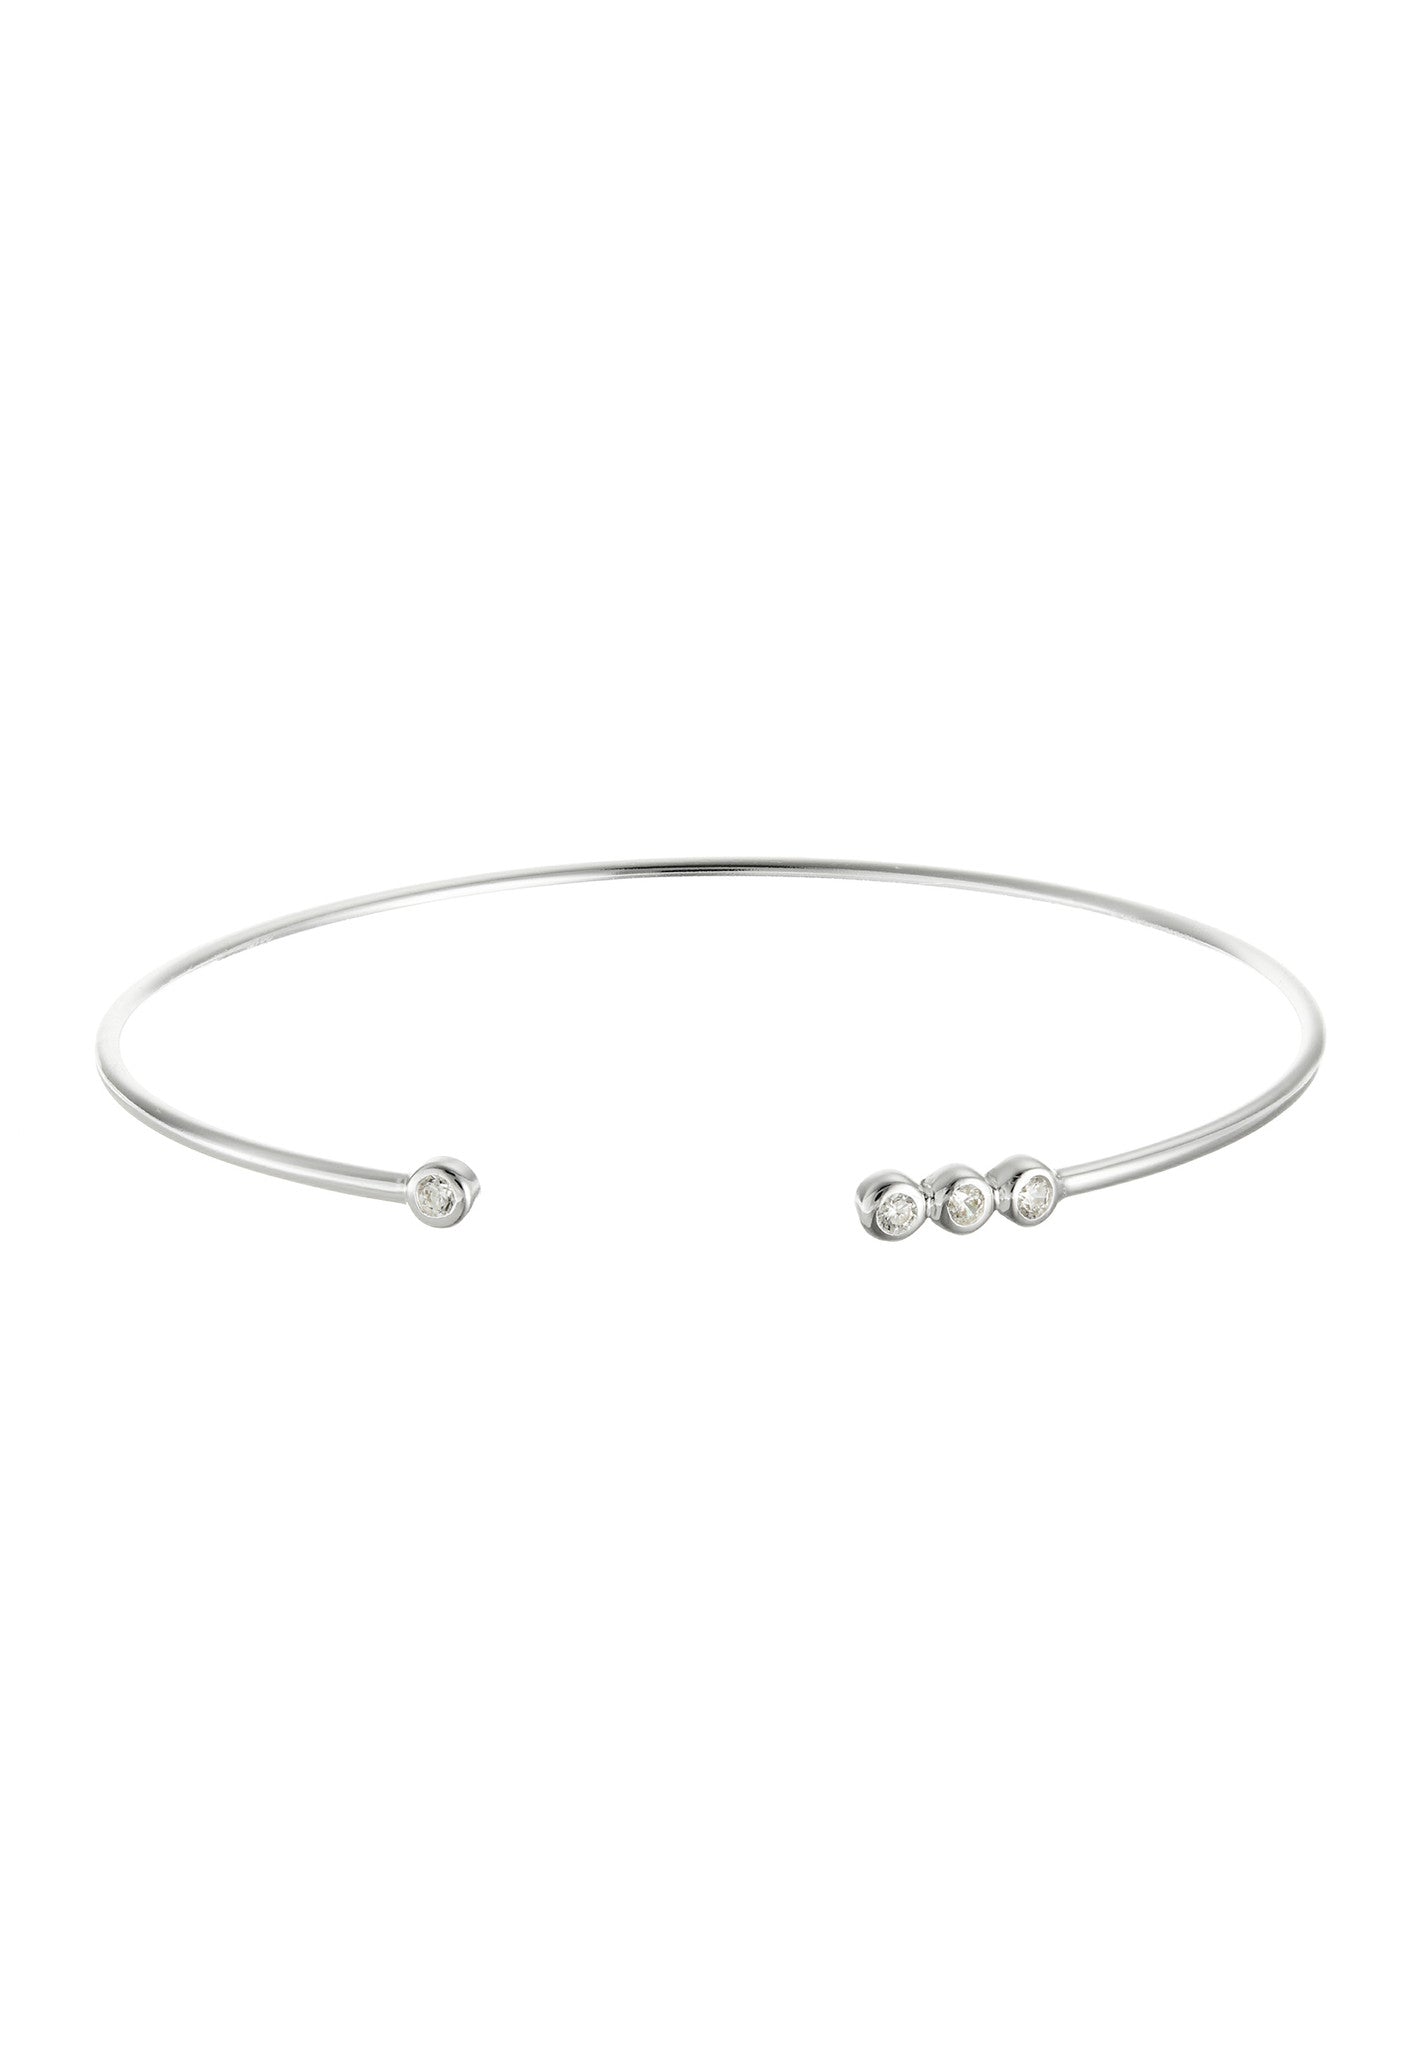 Dawn Gemstone Cuff Bracelet